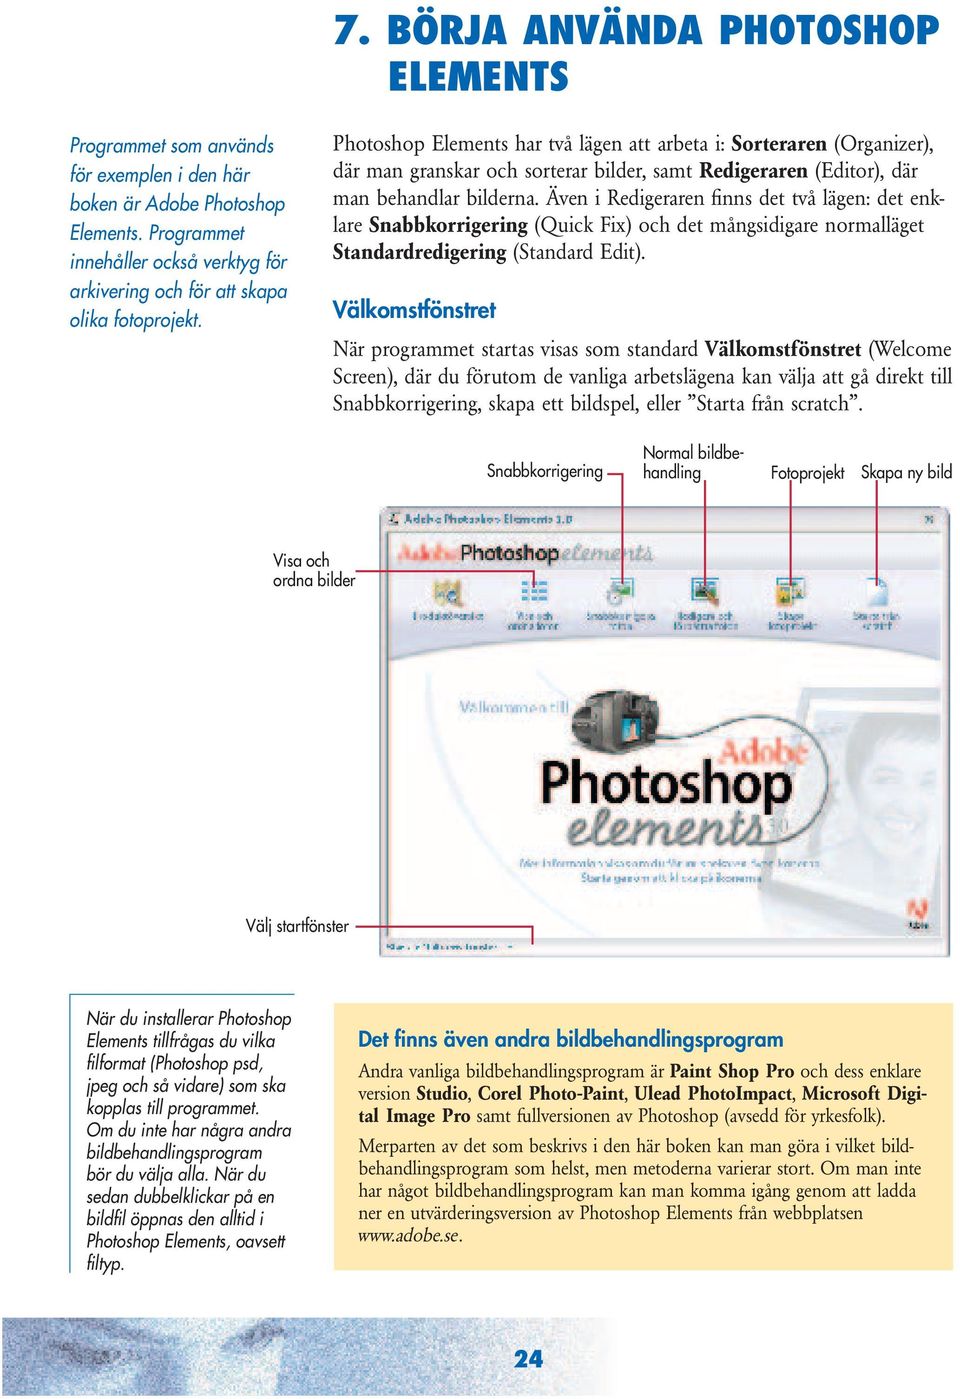 Photoshop Elements har två lägen att arbeta i: Sorteraren (Organizer), där man granskar och sorterar bilder, samt Redigeraren (Editor), där man behandlar bilderna.